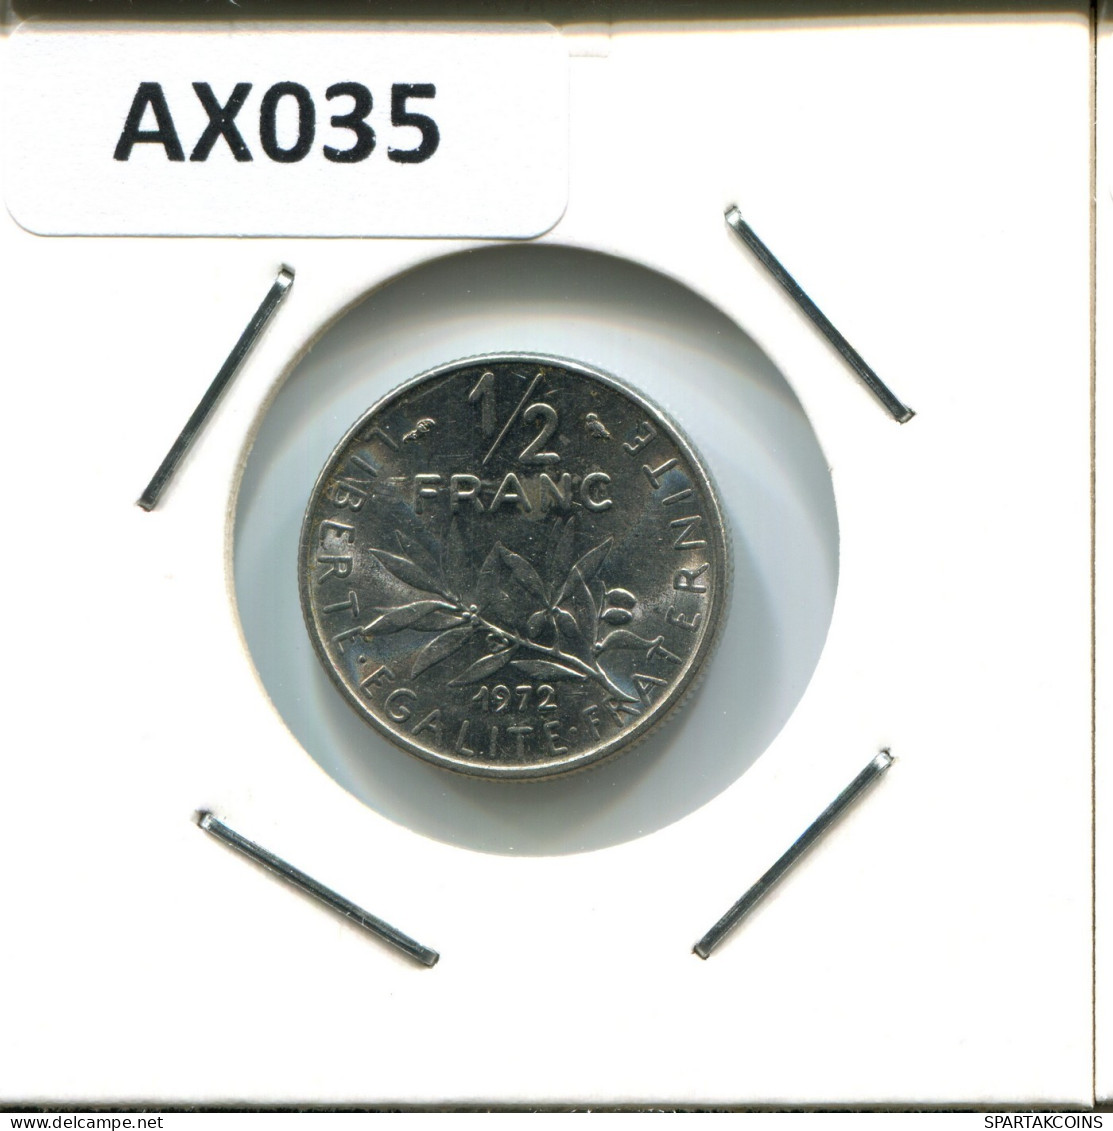 1/2 FRANC 1972 FRANCIA FRANCE Moneda #AX035.E.A - 1/2 Franc